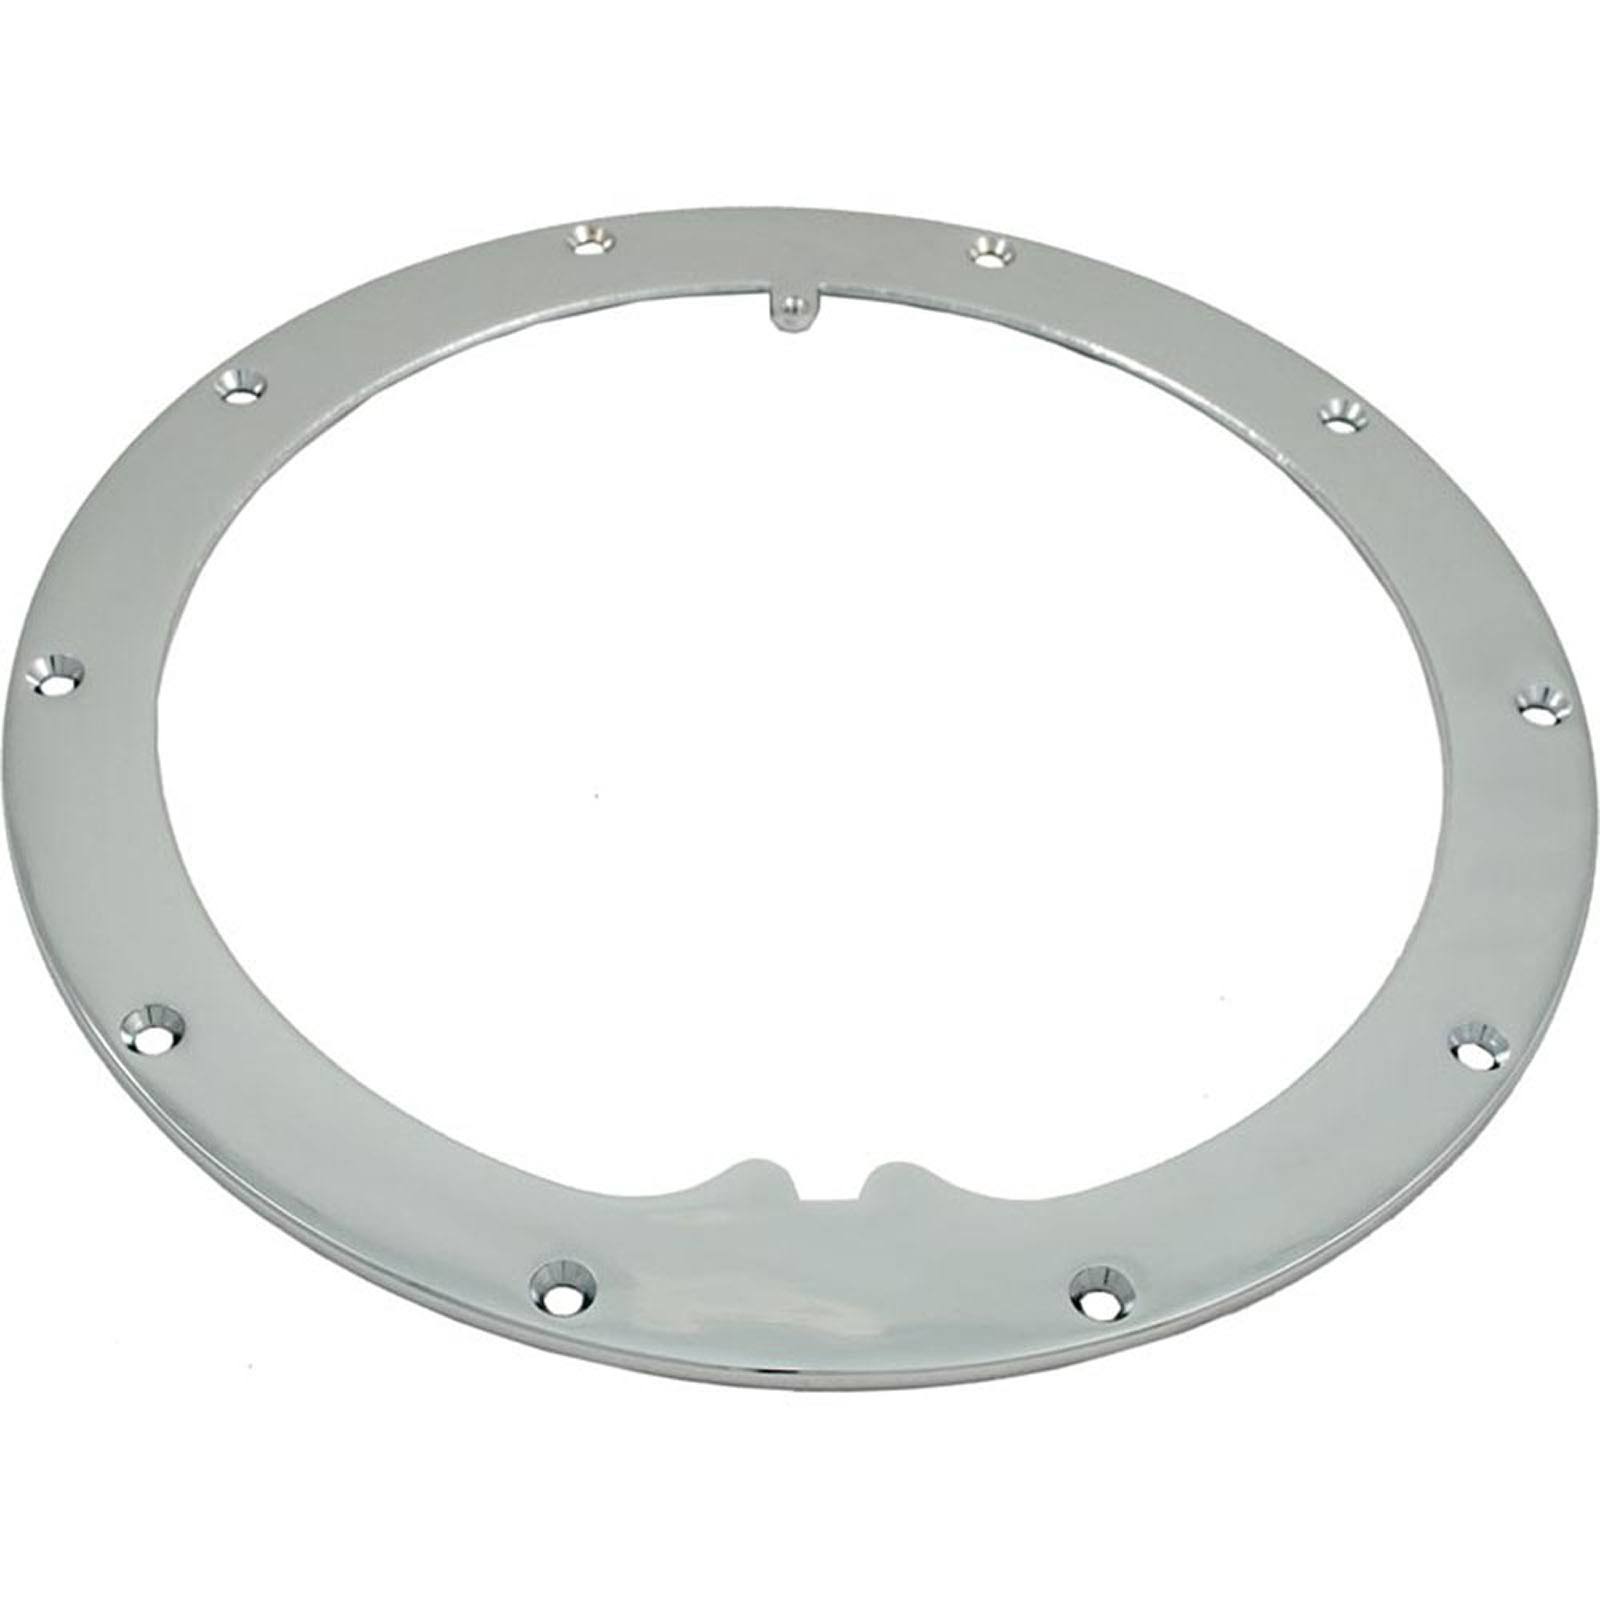 Pentair 79200200 10-hole Standard Liner Sealing Ring